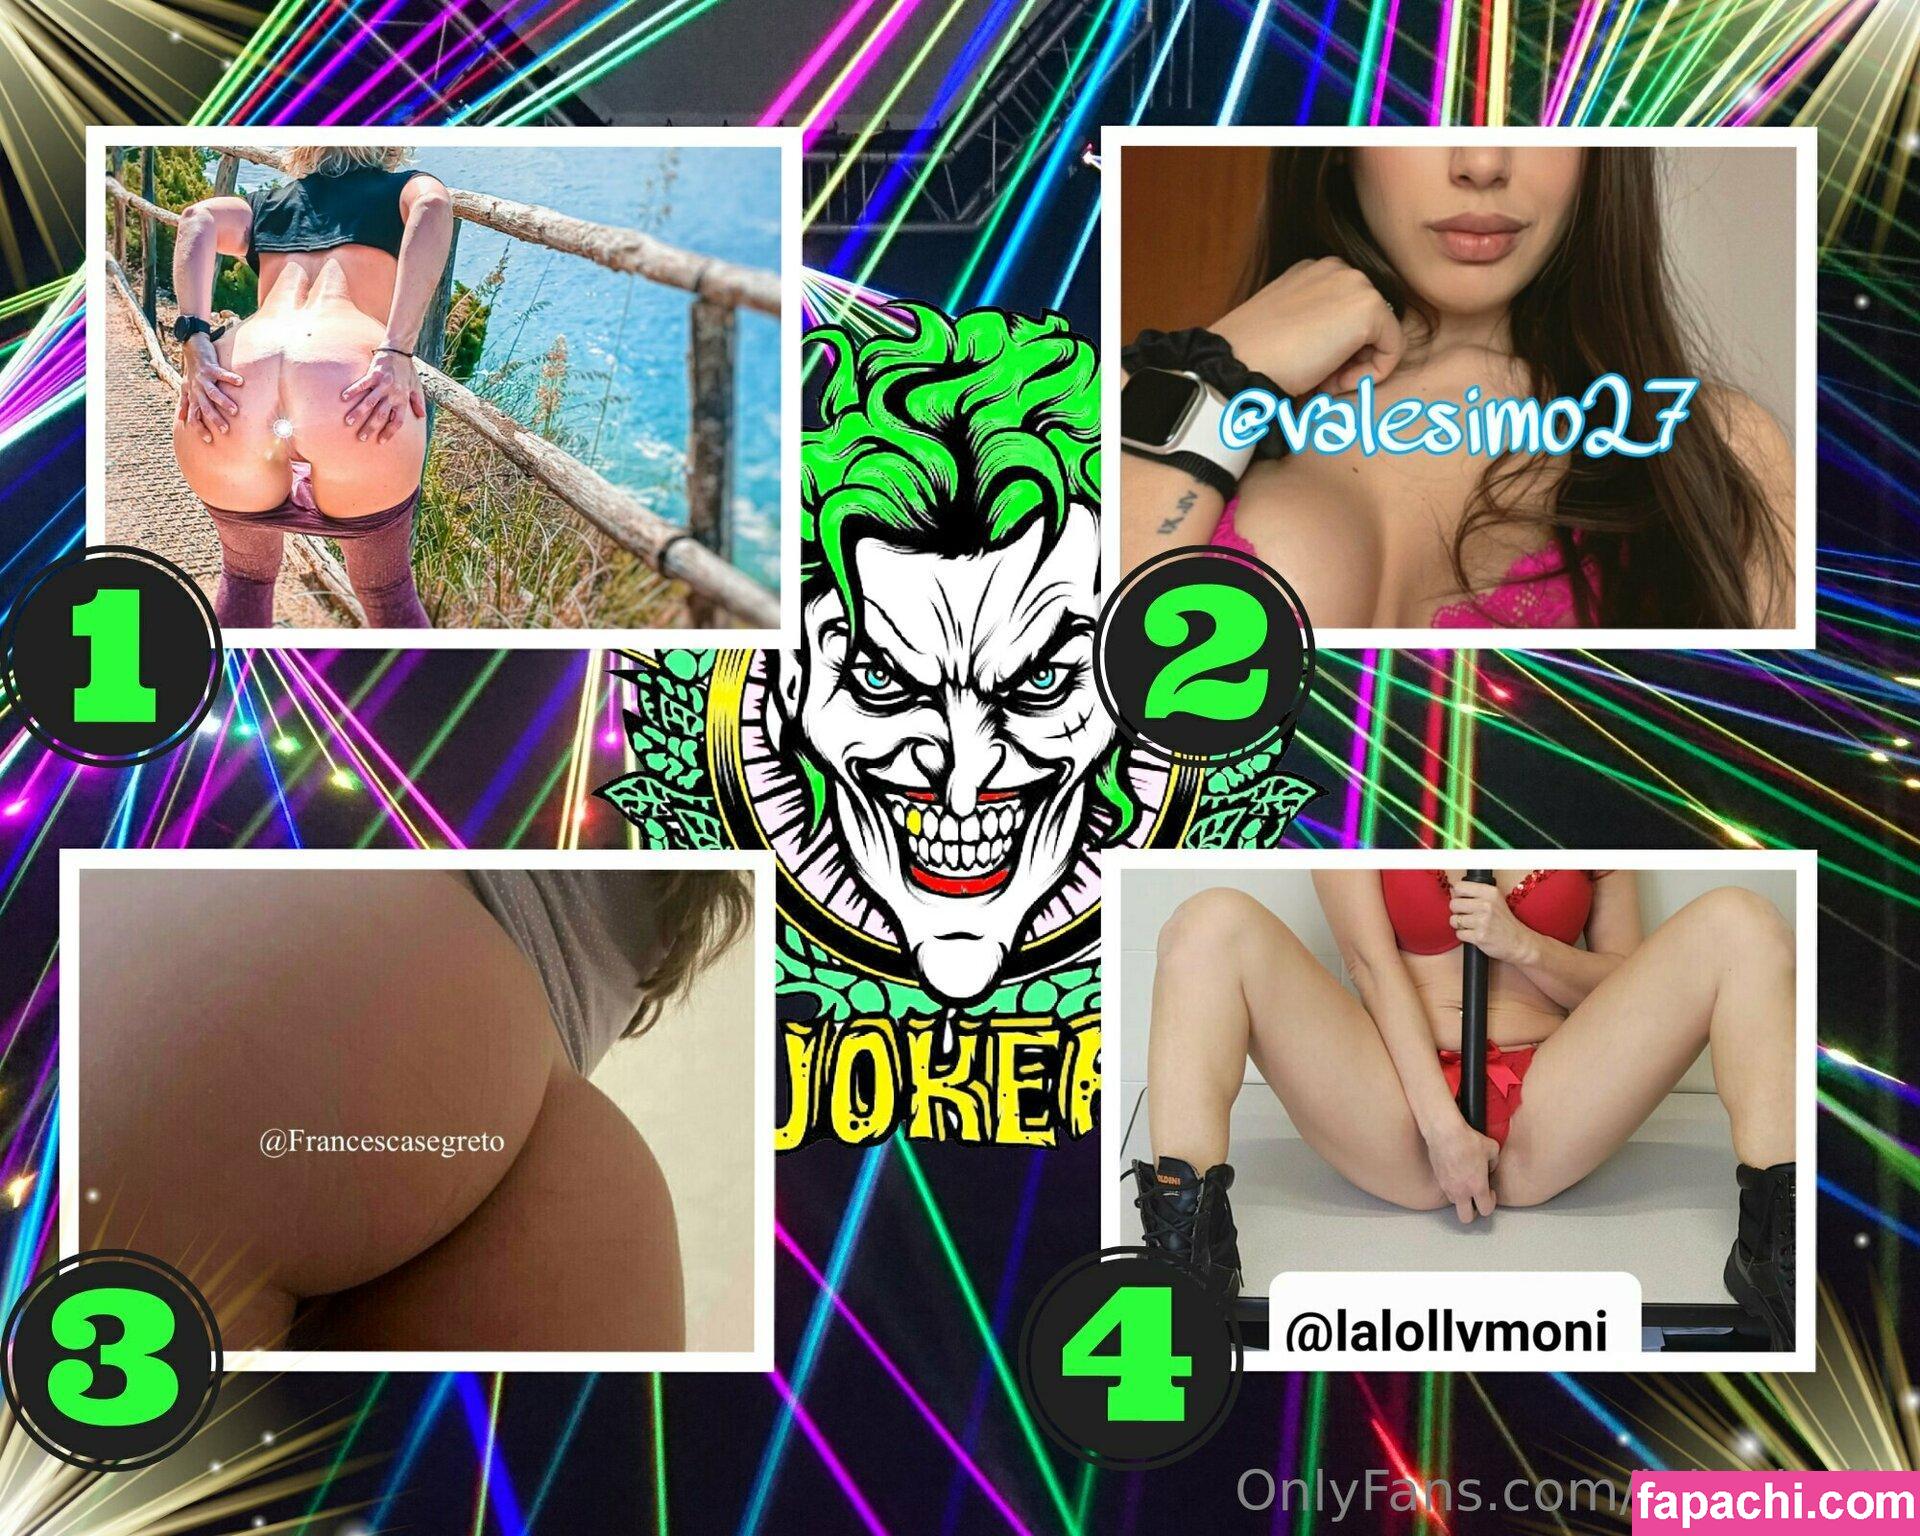 jokeritalia / jokeritalia_ofc leaked nude photo #0404 from OnlyFans/Patreon